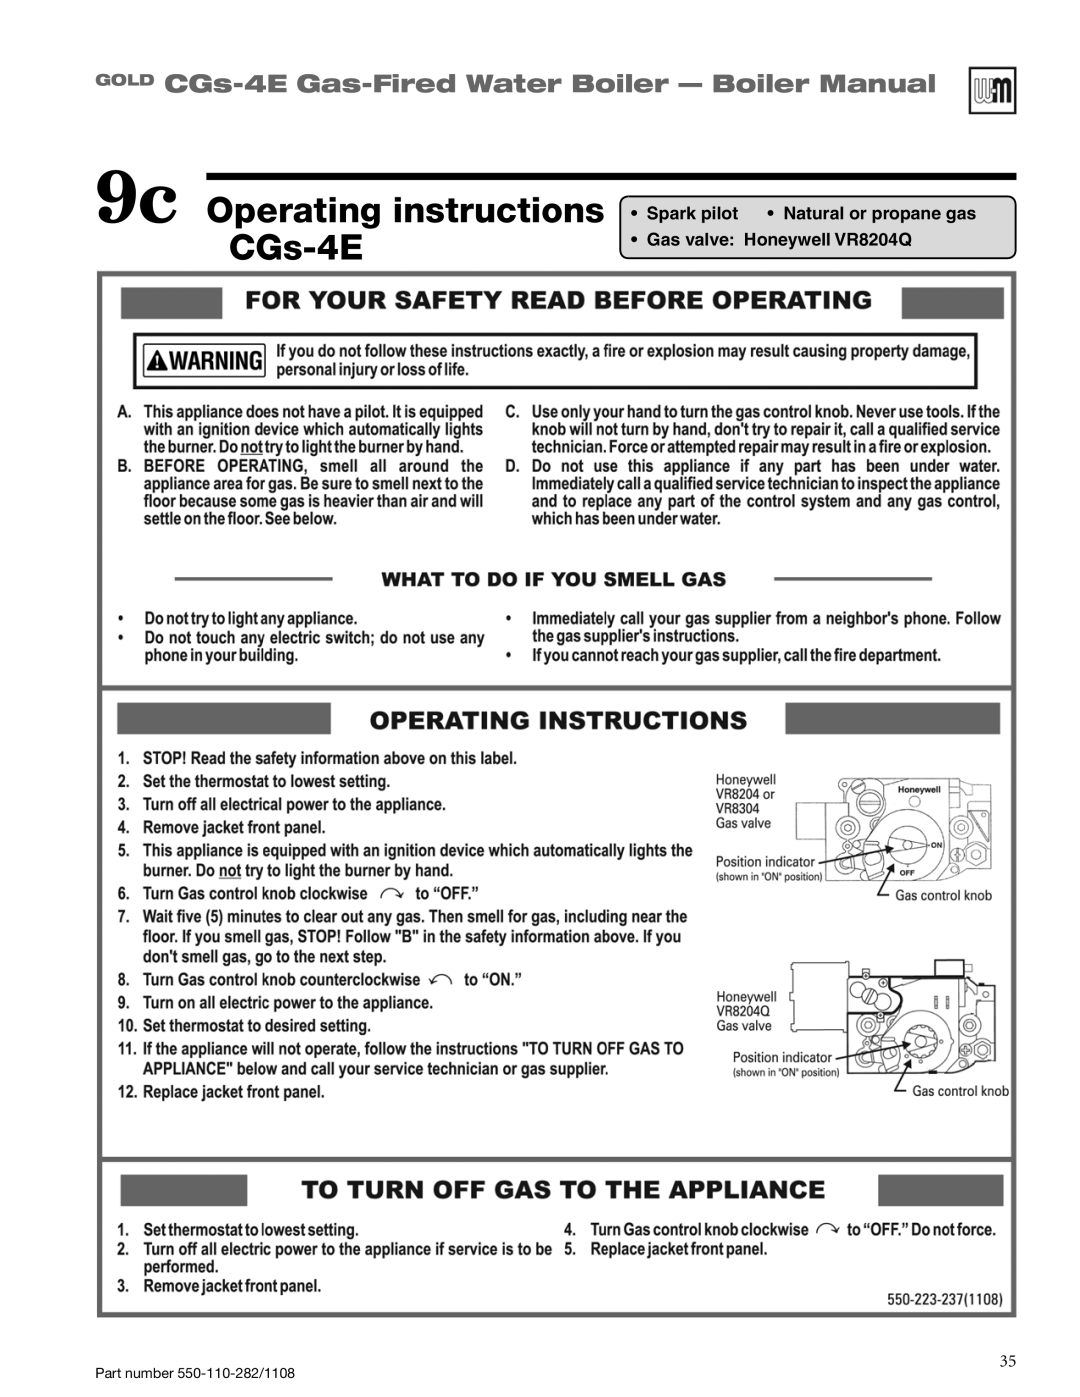 Weil-McLain CGS-4E manual 9c Operating instructions CGs-4E, GOLD CGs-4E Gas-FiredWater Boiler - Boiler Manual 